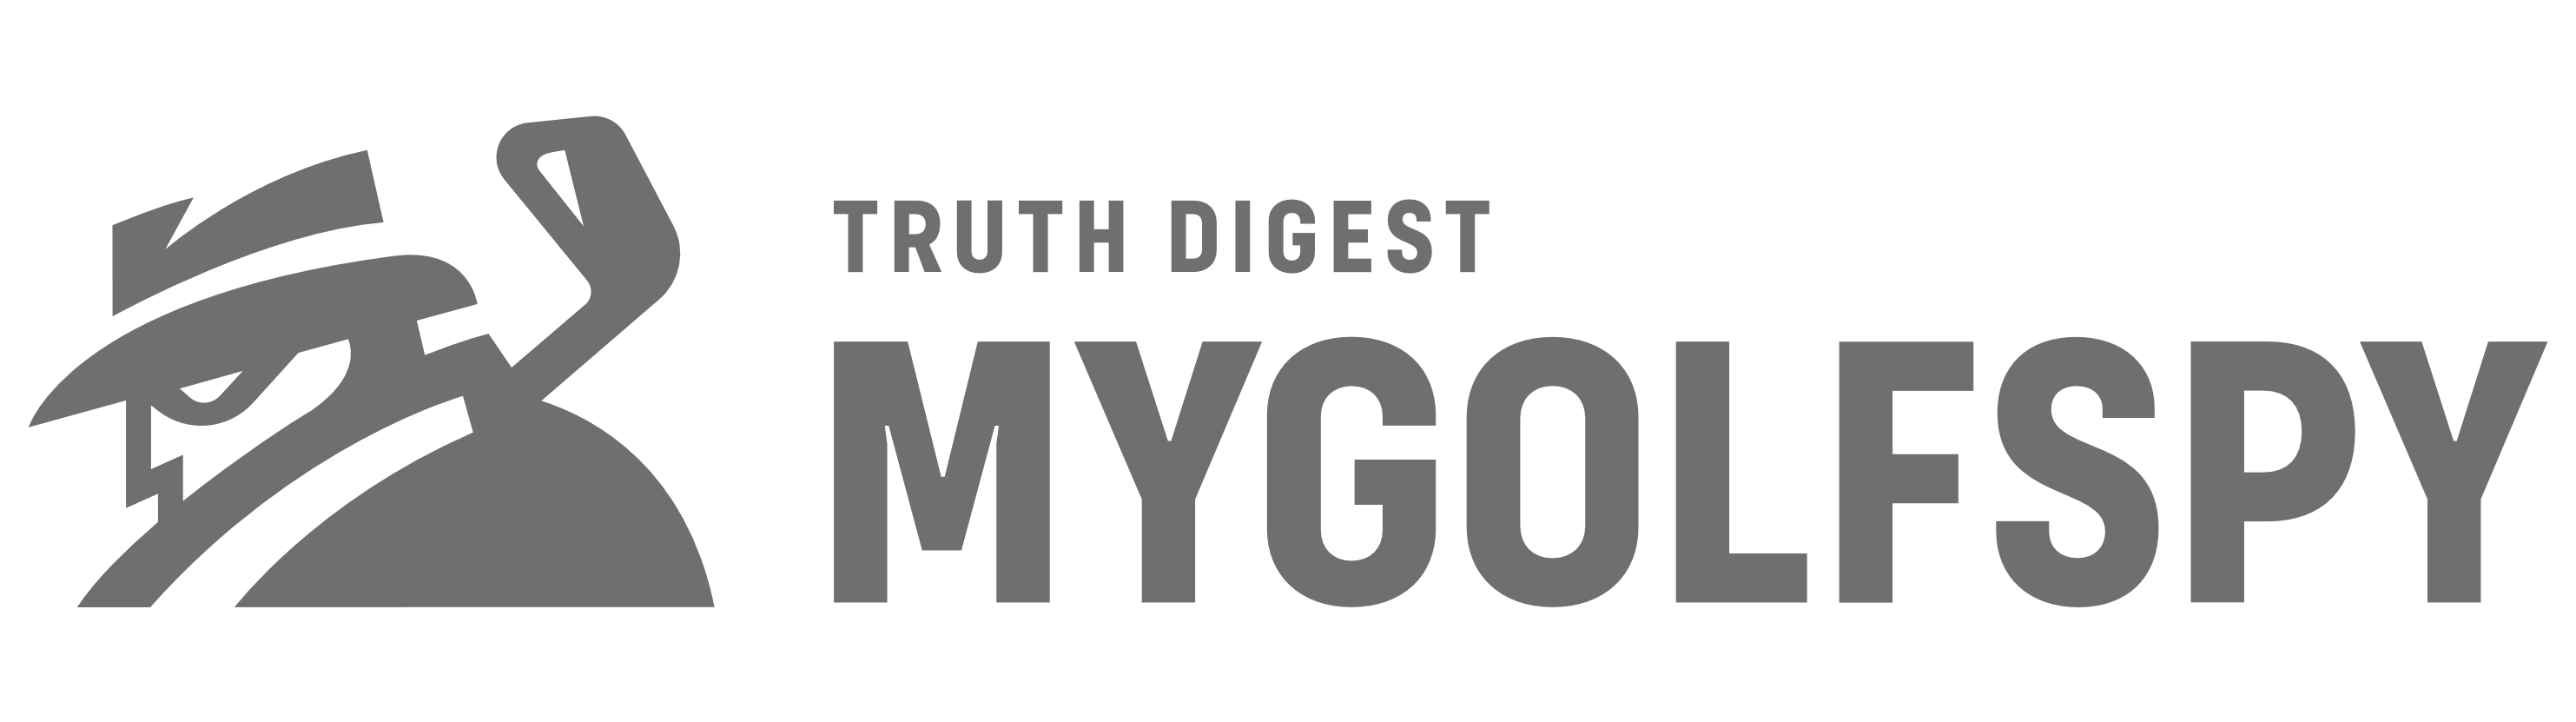 mgs logo 1